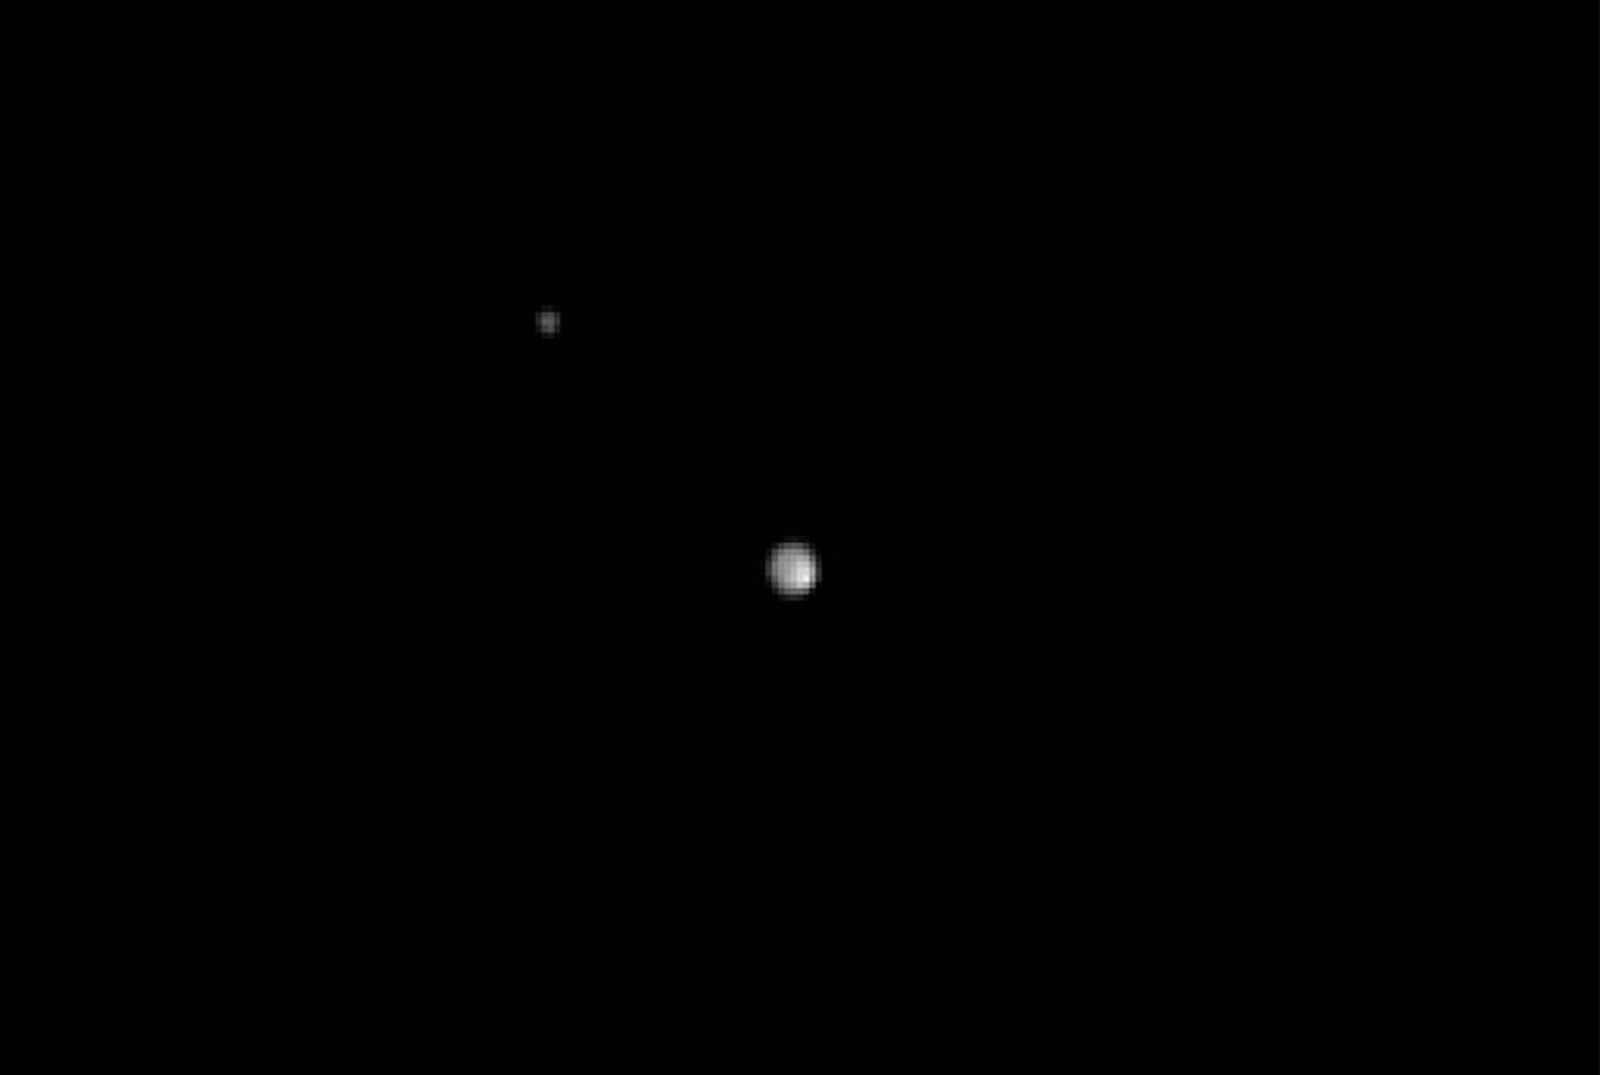 Imagen de Plutón y de su luna Caronte obtenida el 29 de abril.